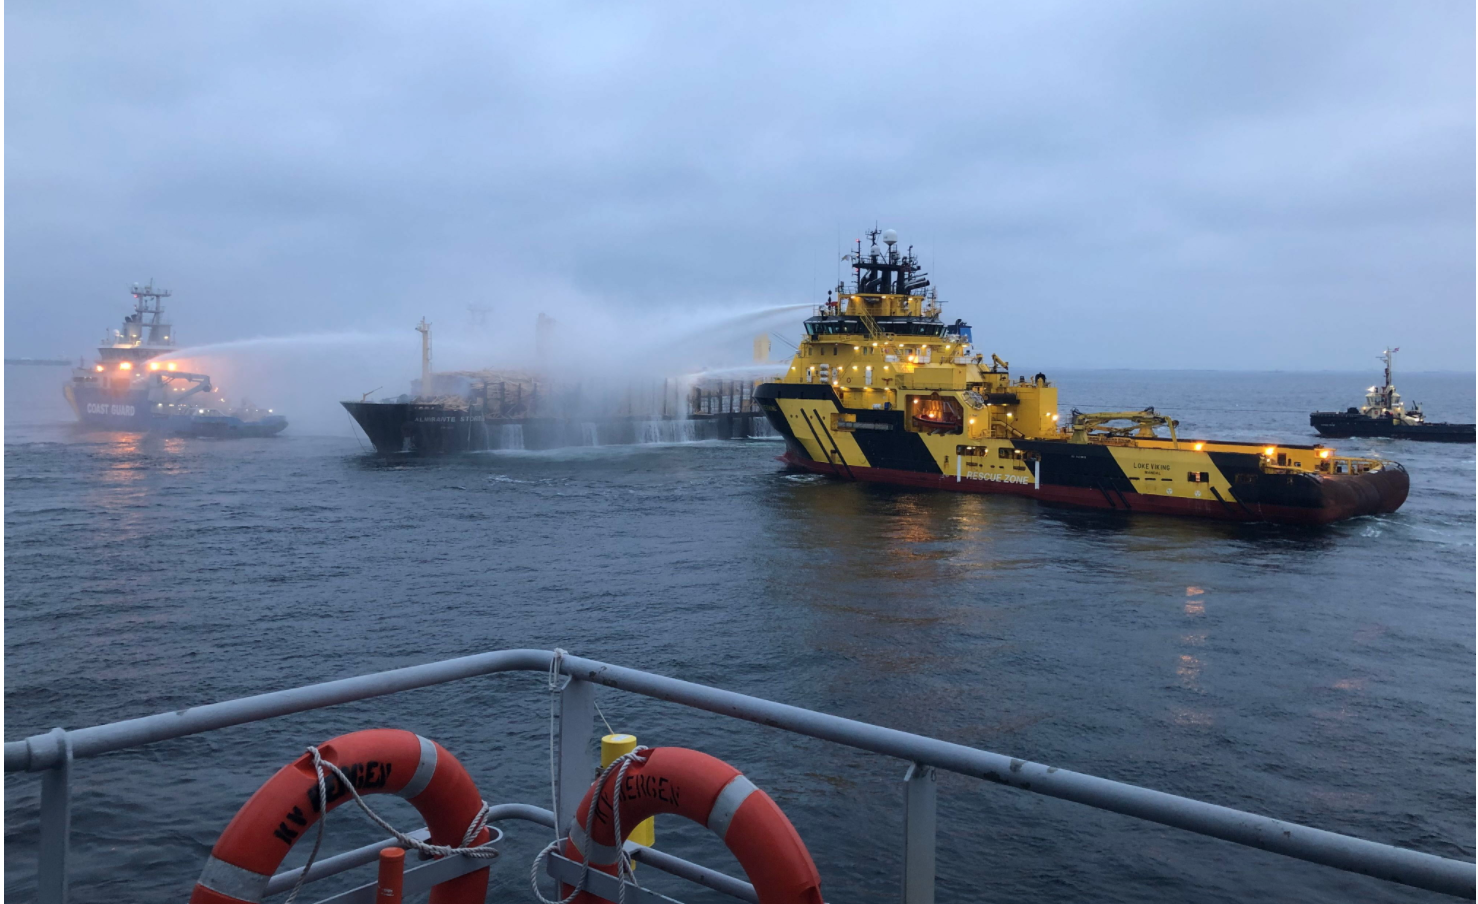 Пожар на сухогрузе у берегов Швеции не под контролем с 4 декабря, судно отбуксируют в порт Гетеборга